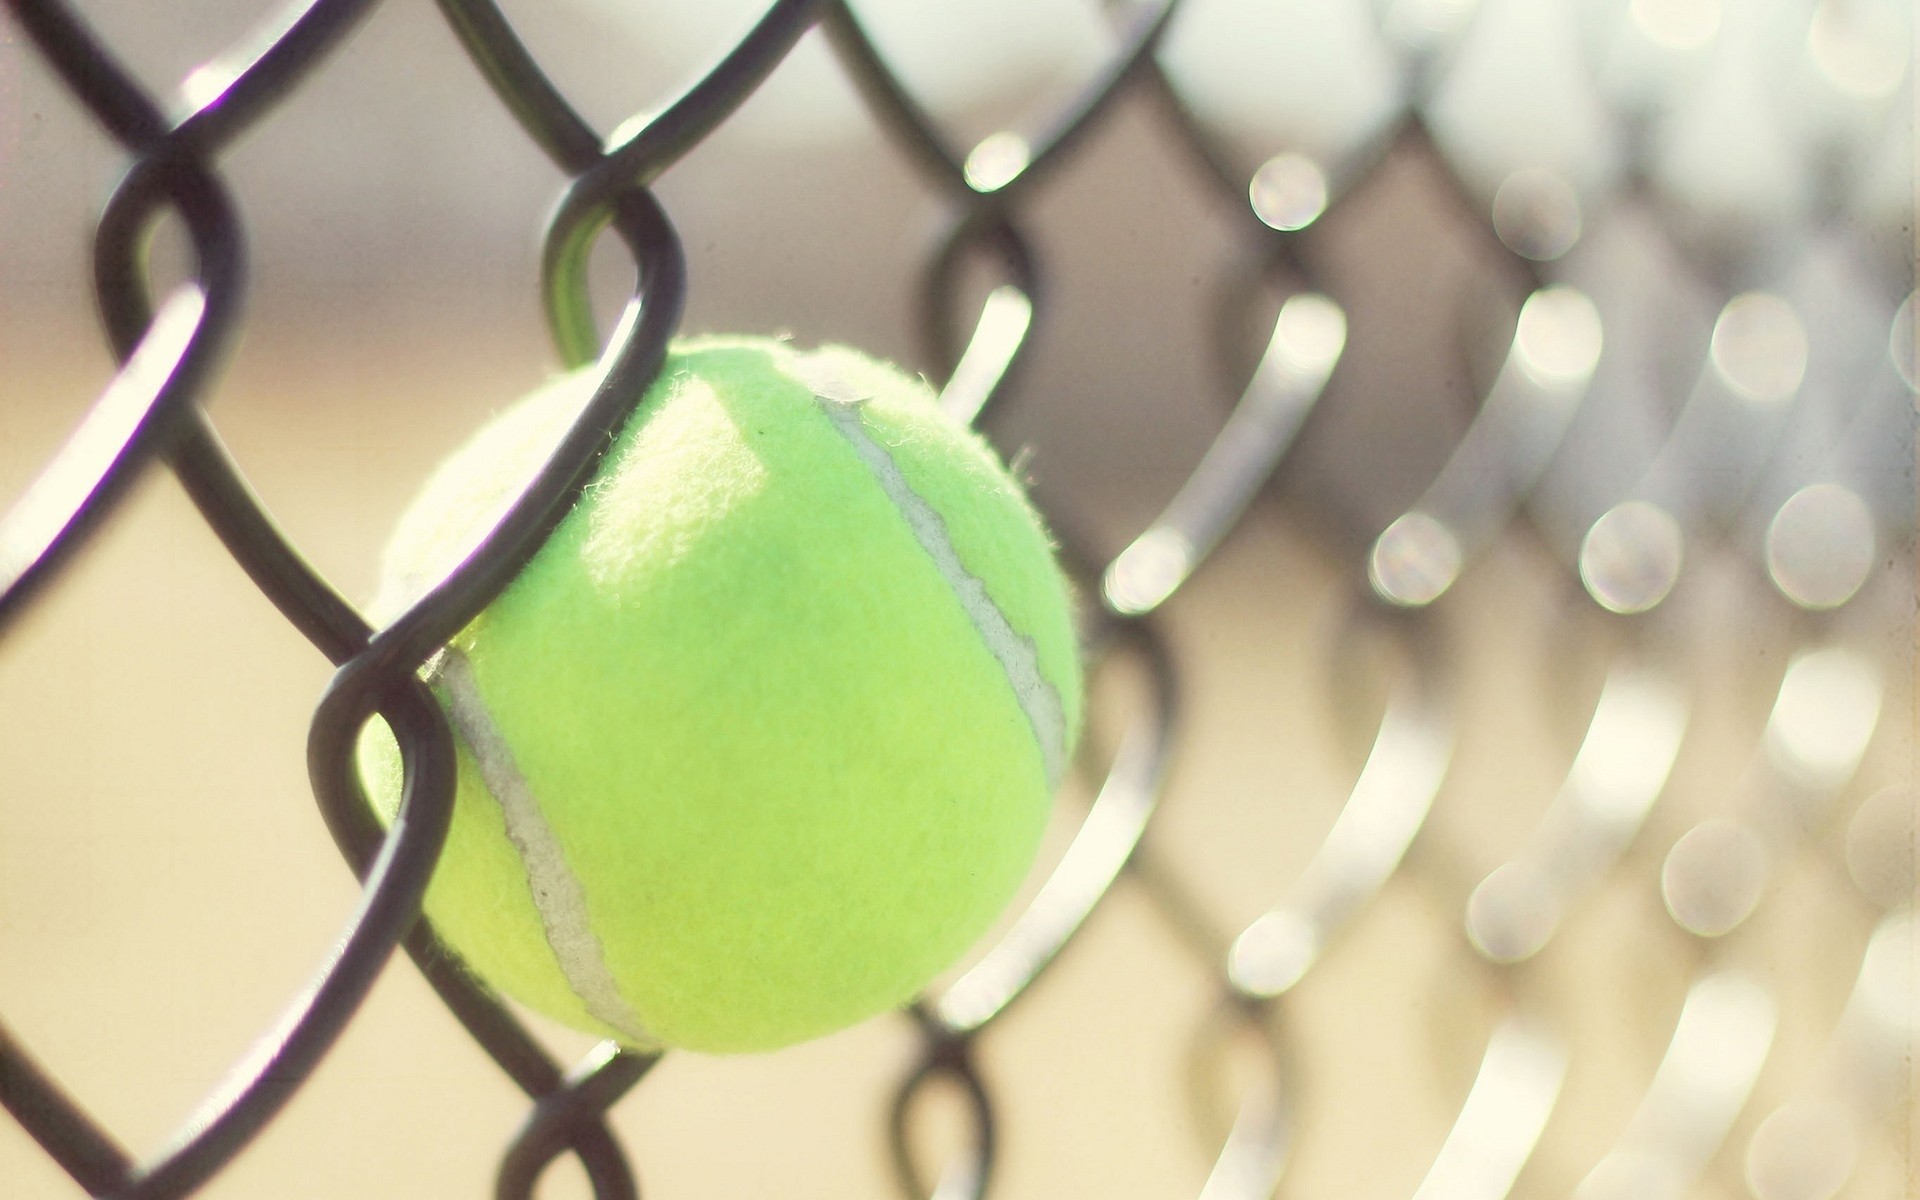 General 1920x1200 sport tennis ball tennis balls fence depth of field sunlight metal grid closeup